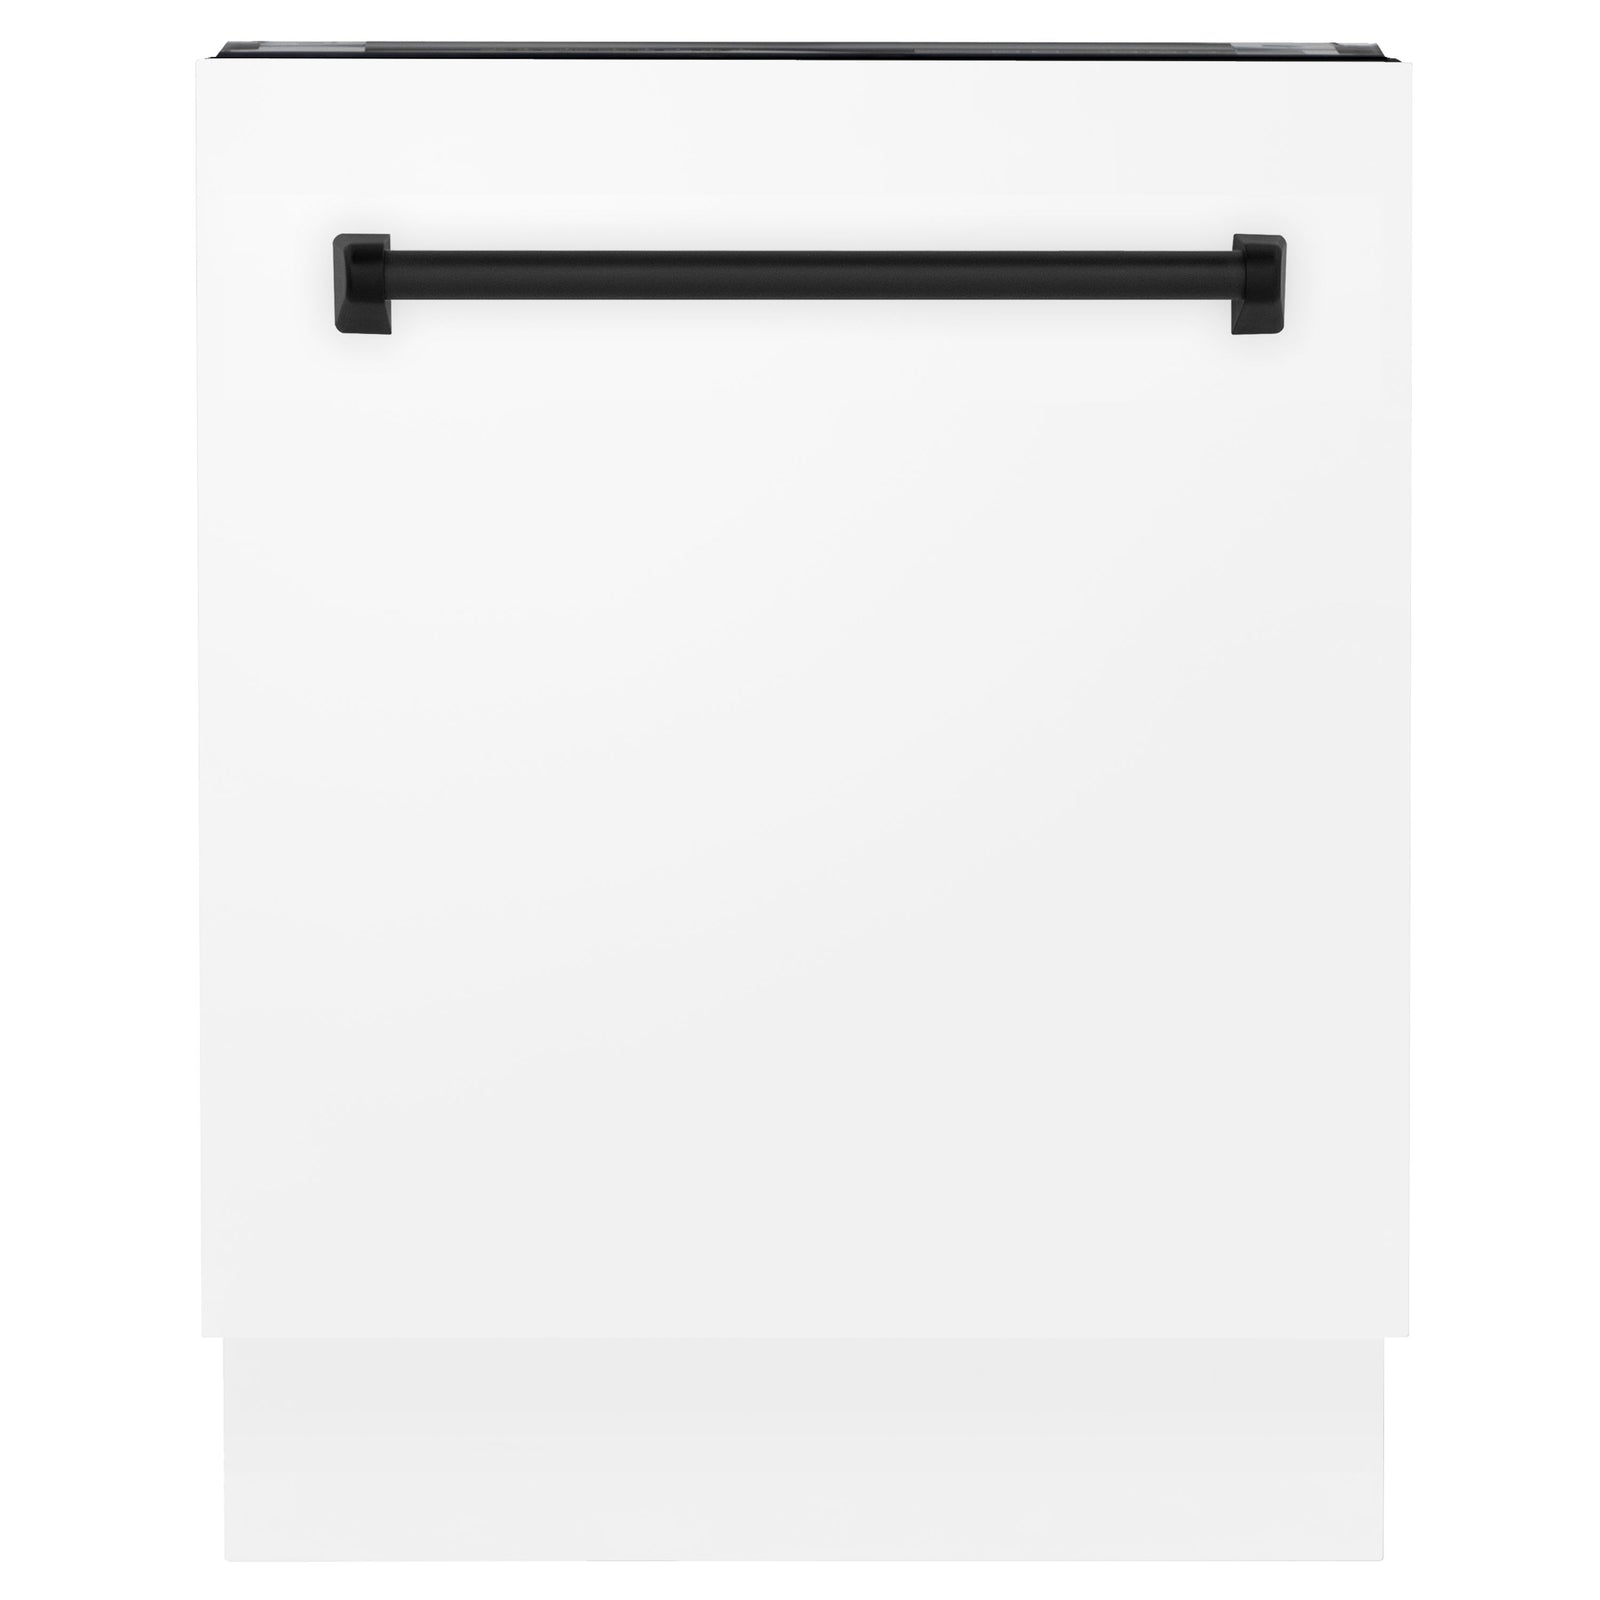 ZLINE Autograph Series 24 inch Tall Dishwasher in White Matte with Matte Black Handle, DWVZ-WM-24-MB - Smart Kitchen Lab